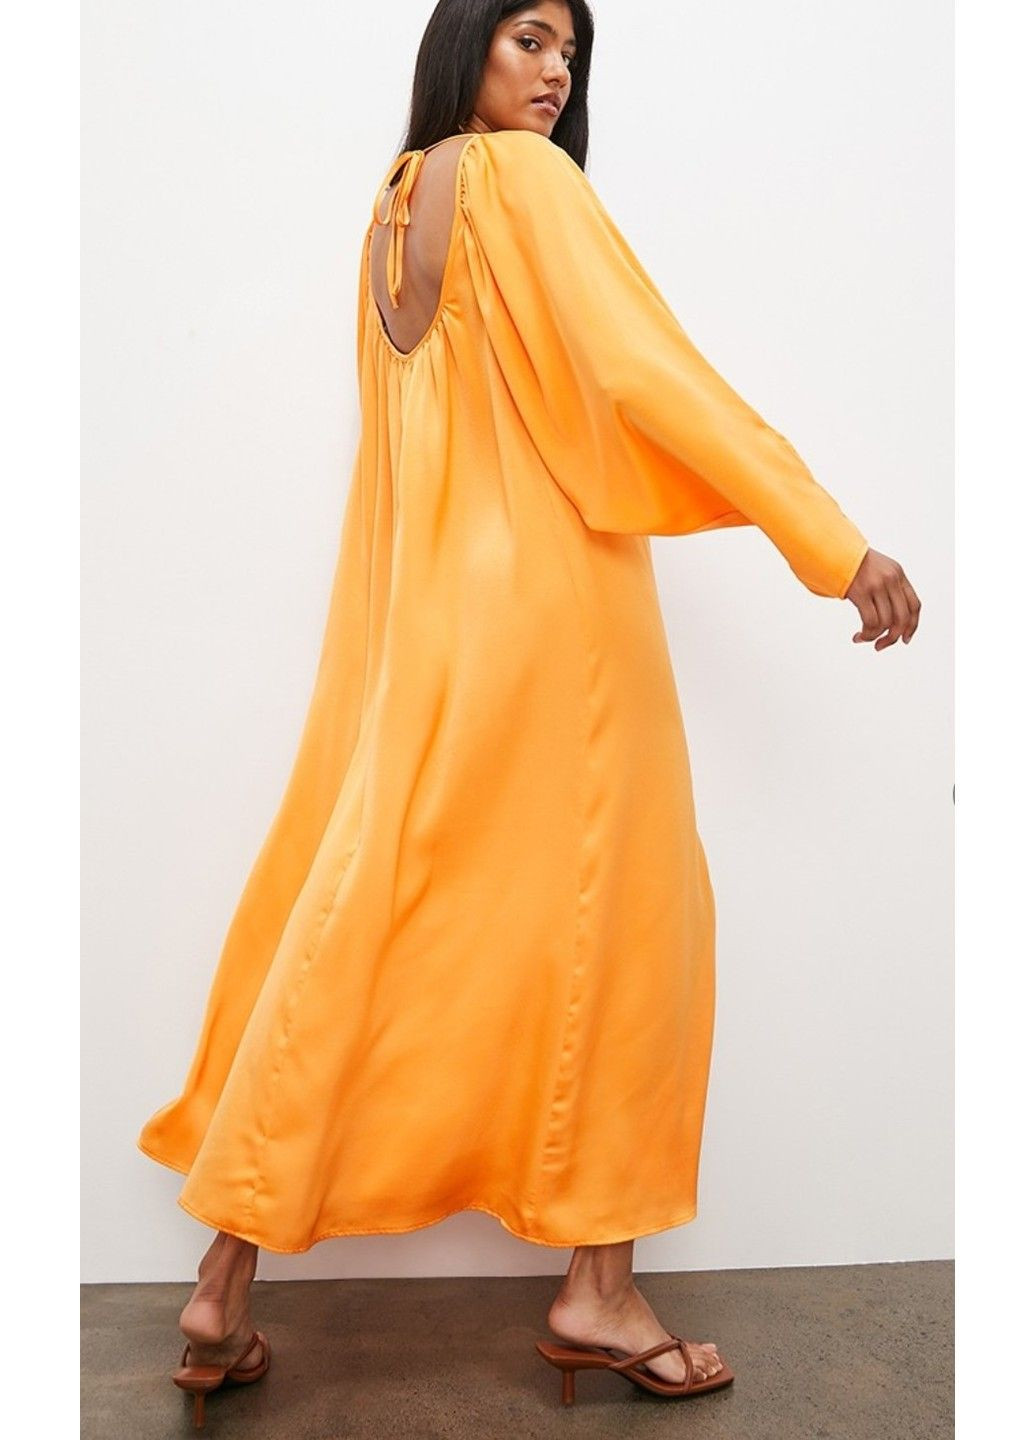 Оранжевое коктейльное женское объемное атласное платье н&м (57040) xs оранжевое H&M